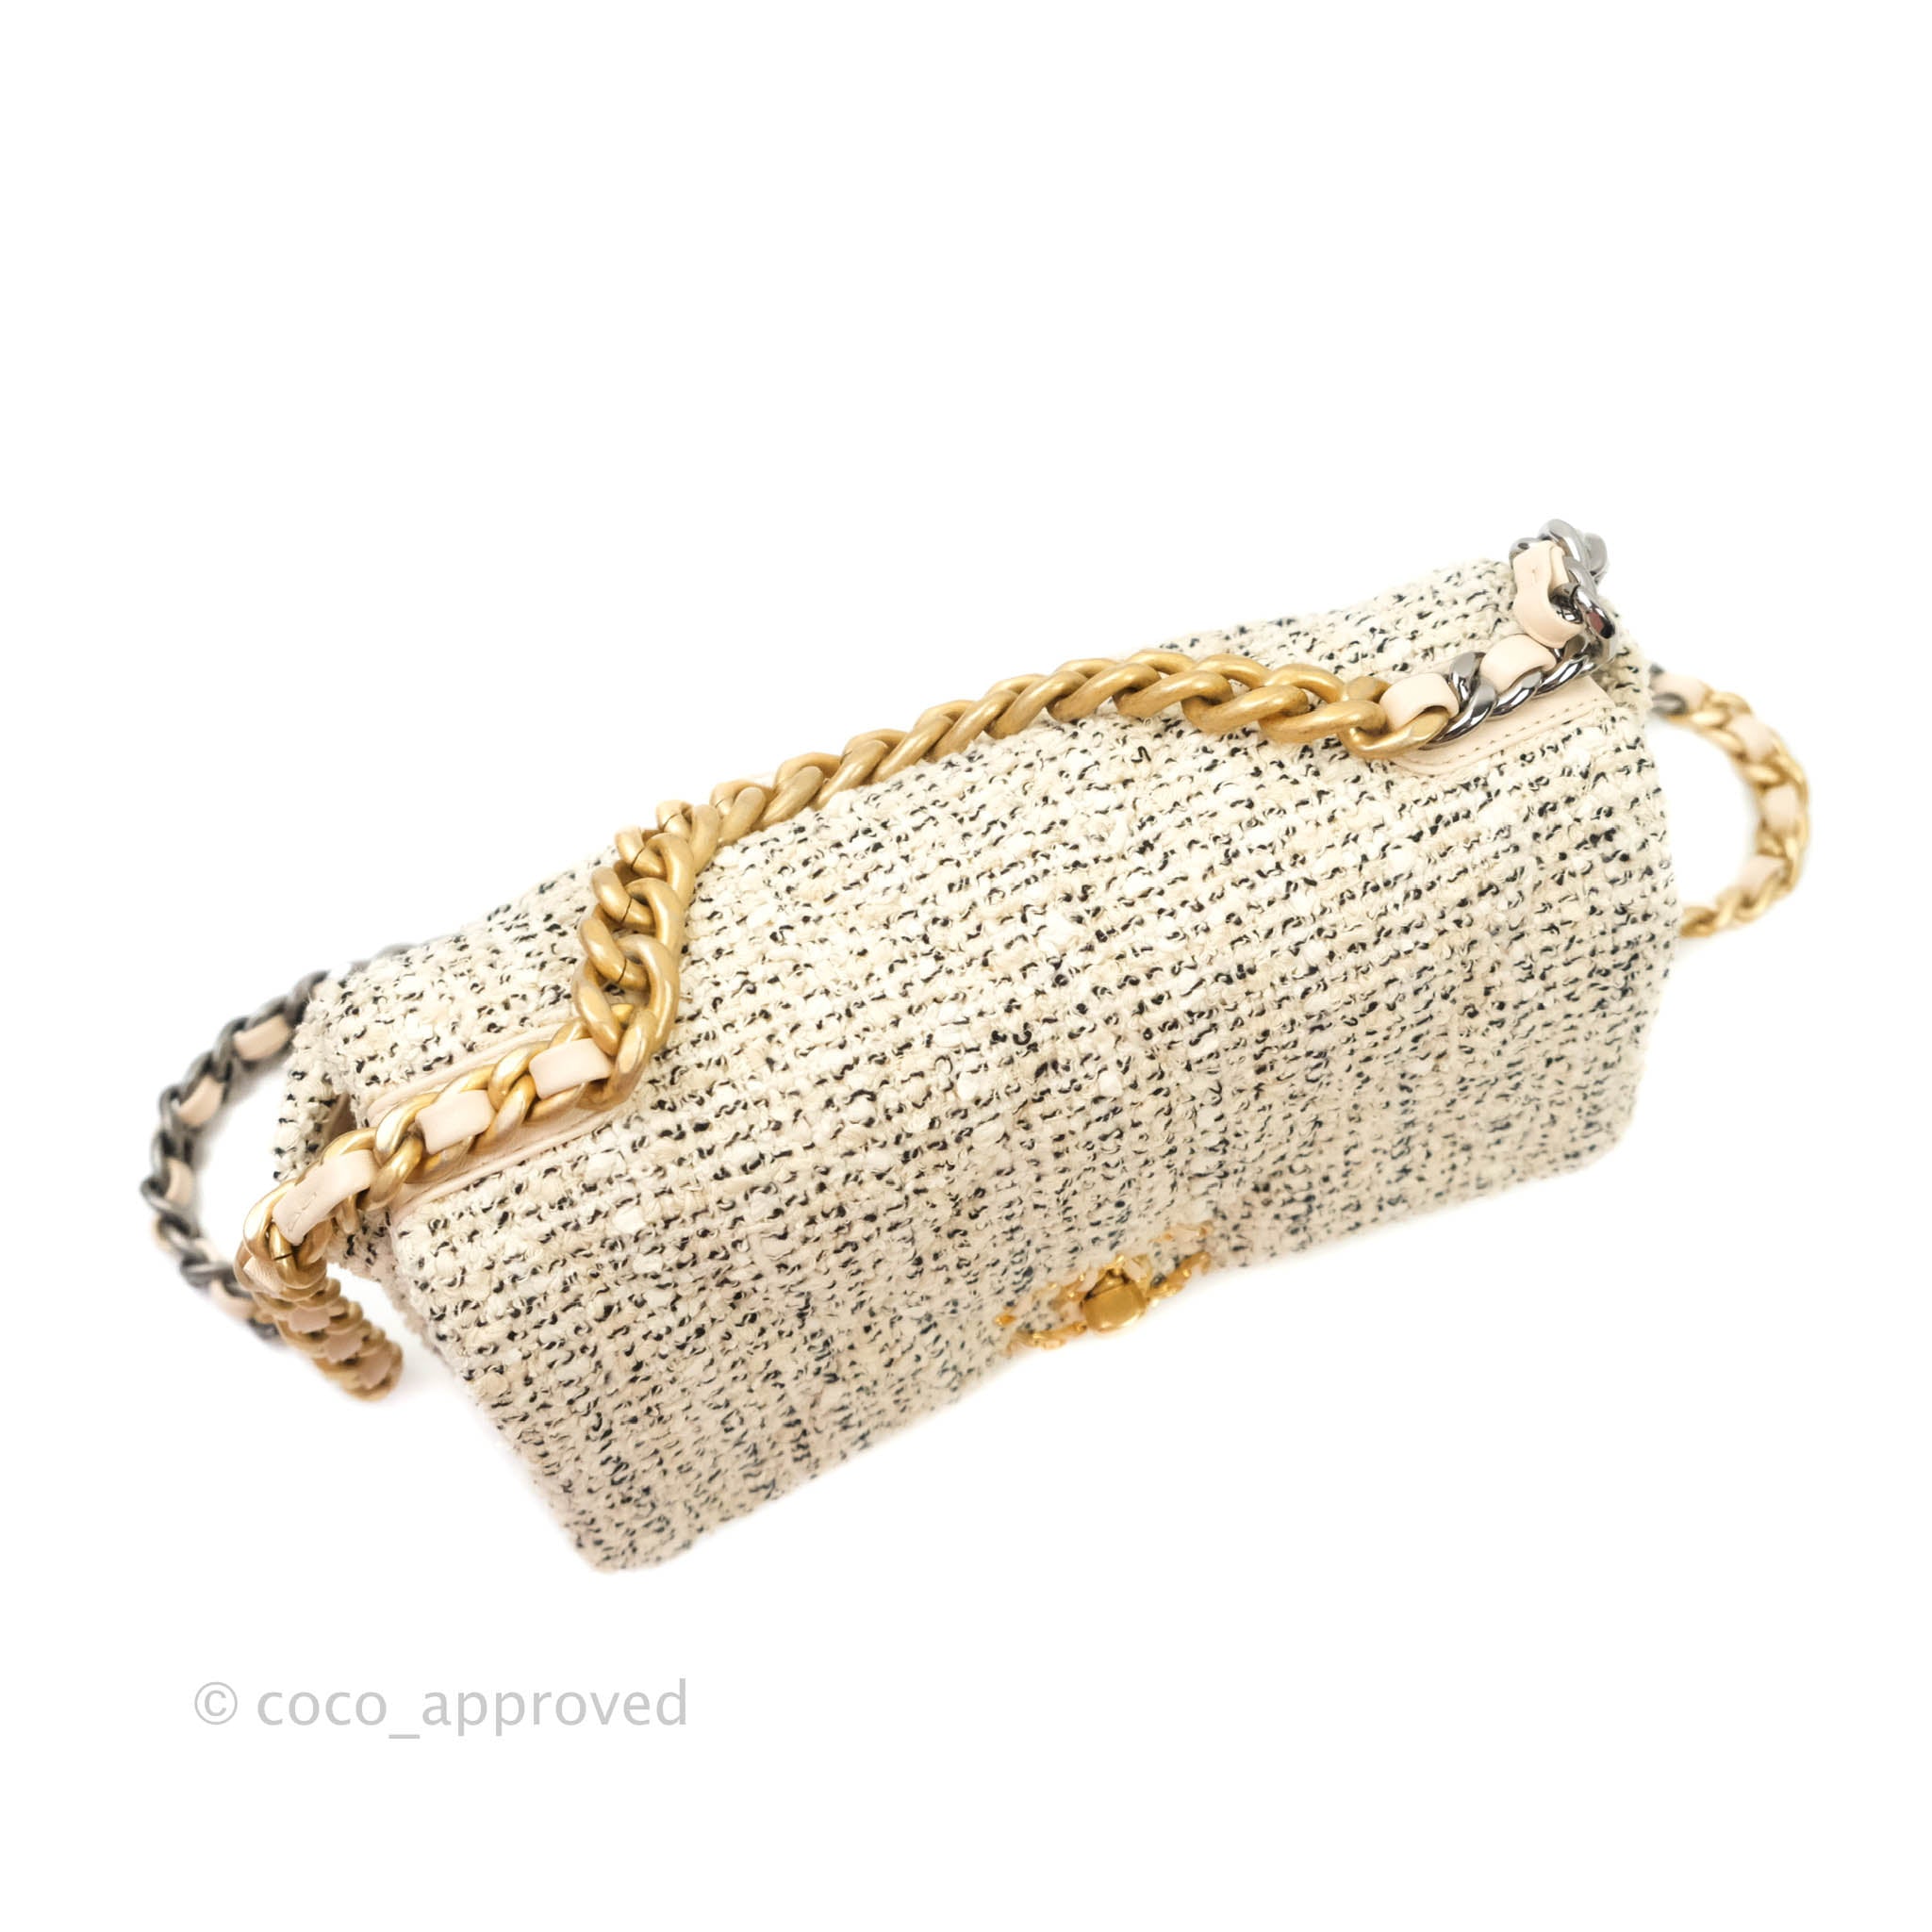 Chanel Chanel 19 Tweed Handbag